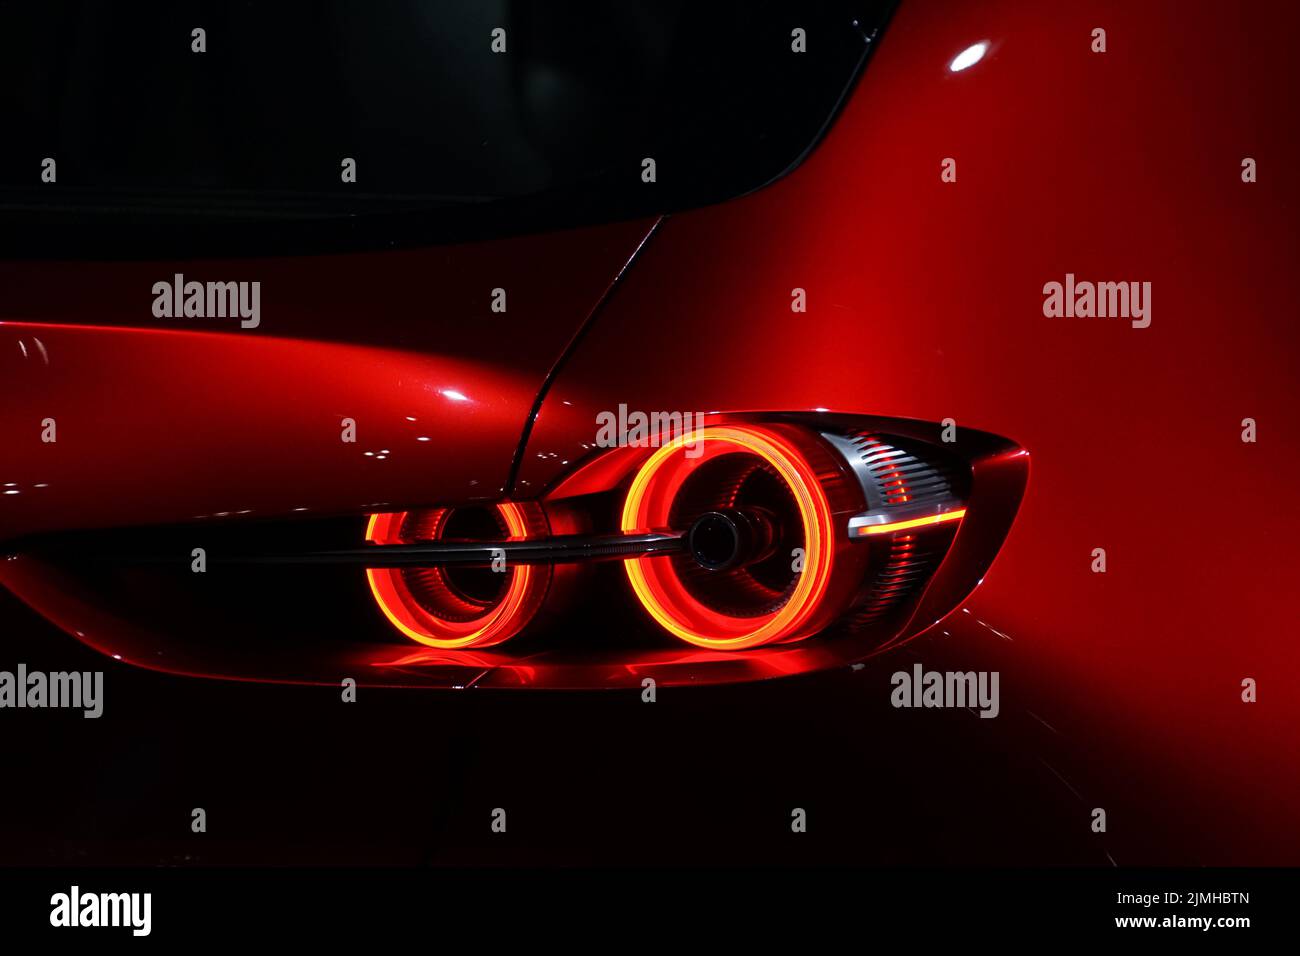 Immagine del fanalino di coda dell'auto freddo Foto Stock